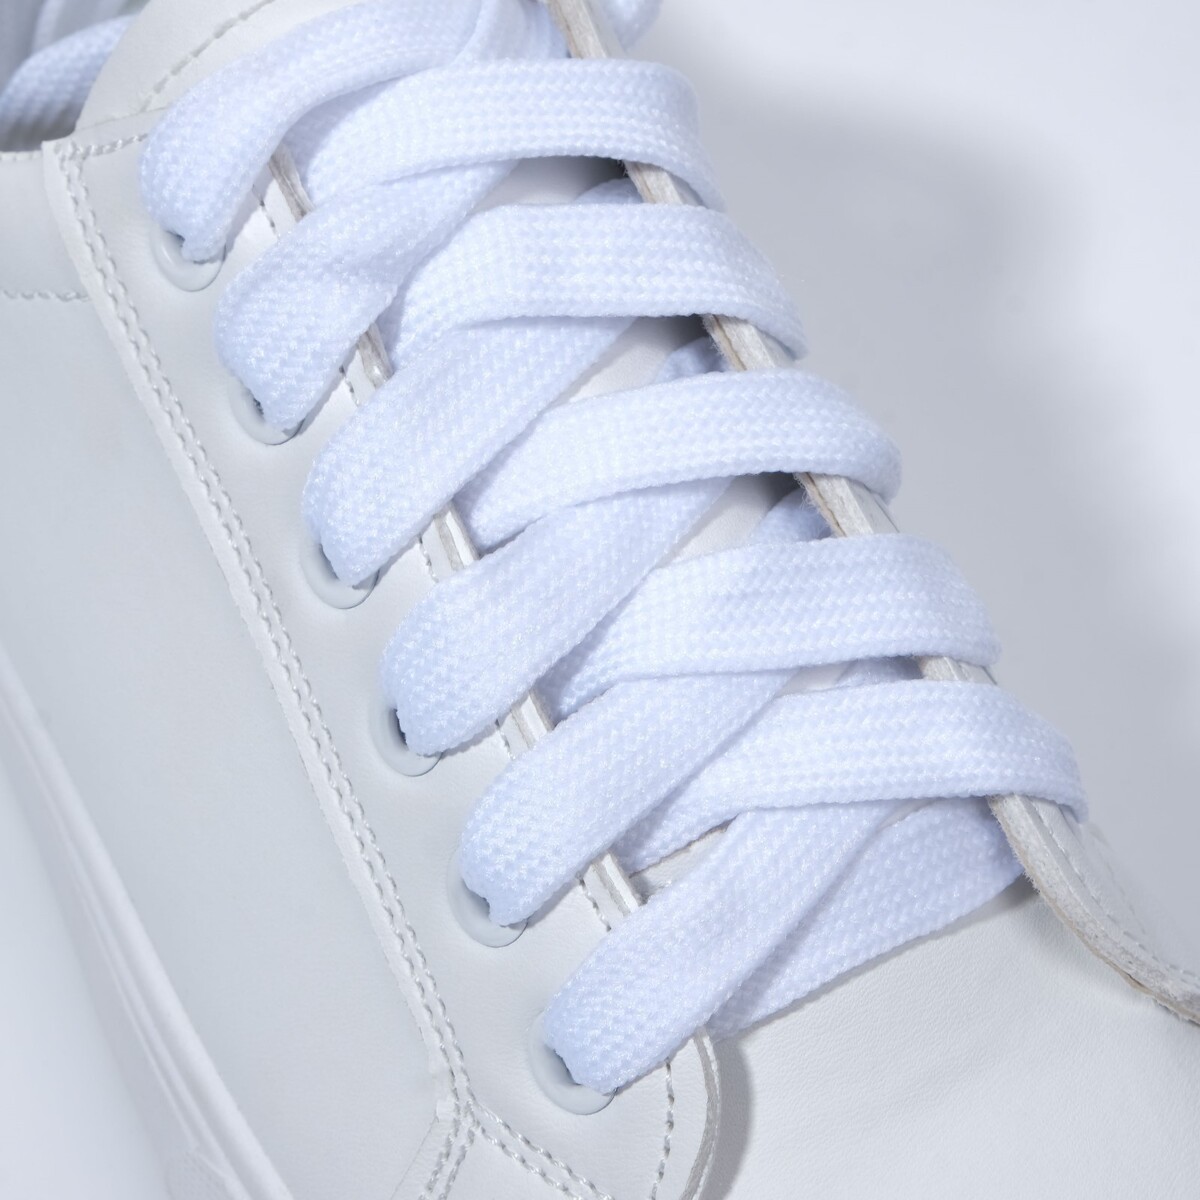 фото Шнурки для обуви, пара, широкие, 12 мм, 120 см, цвет белый onlitop